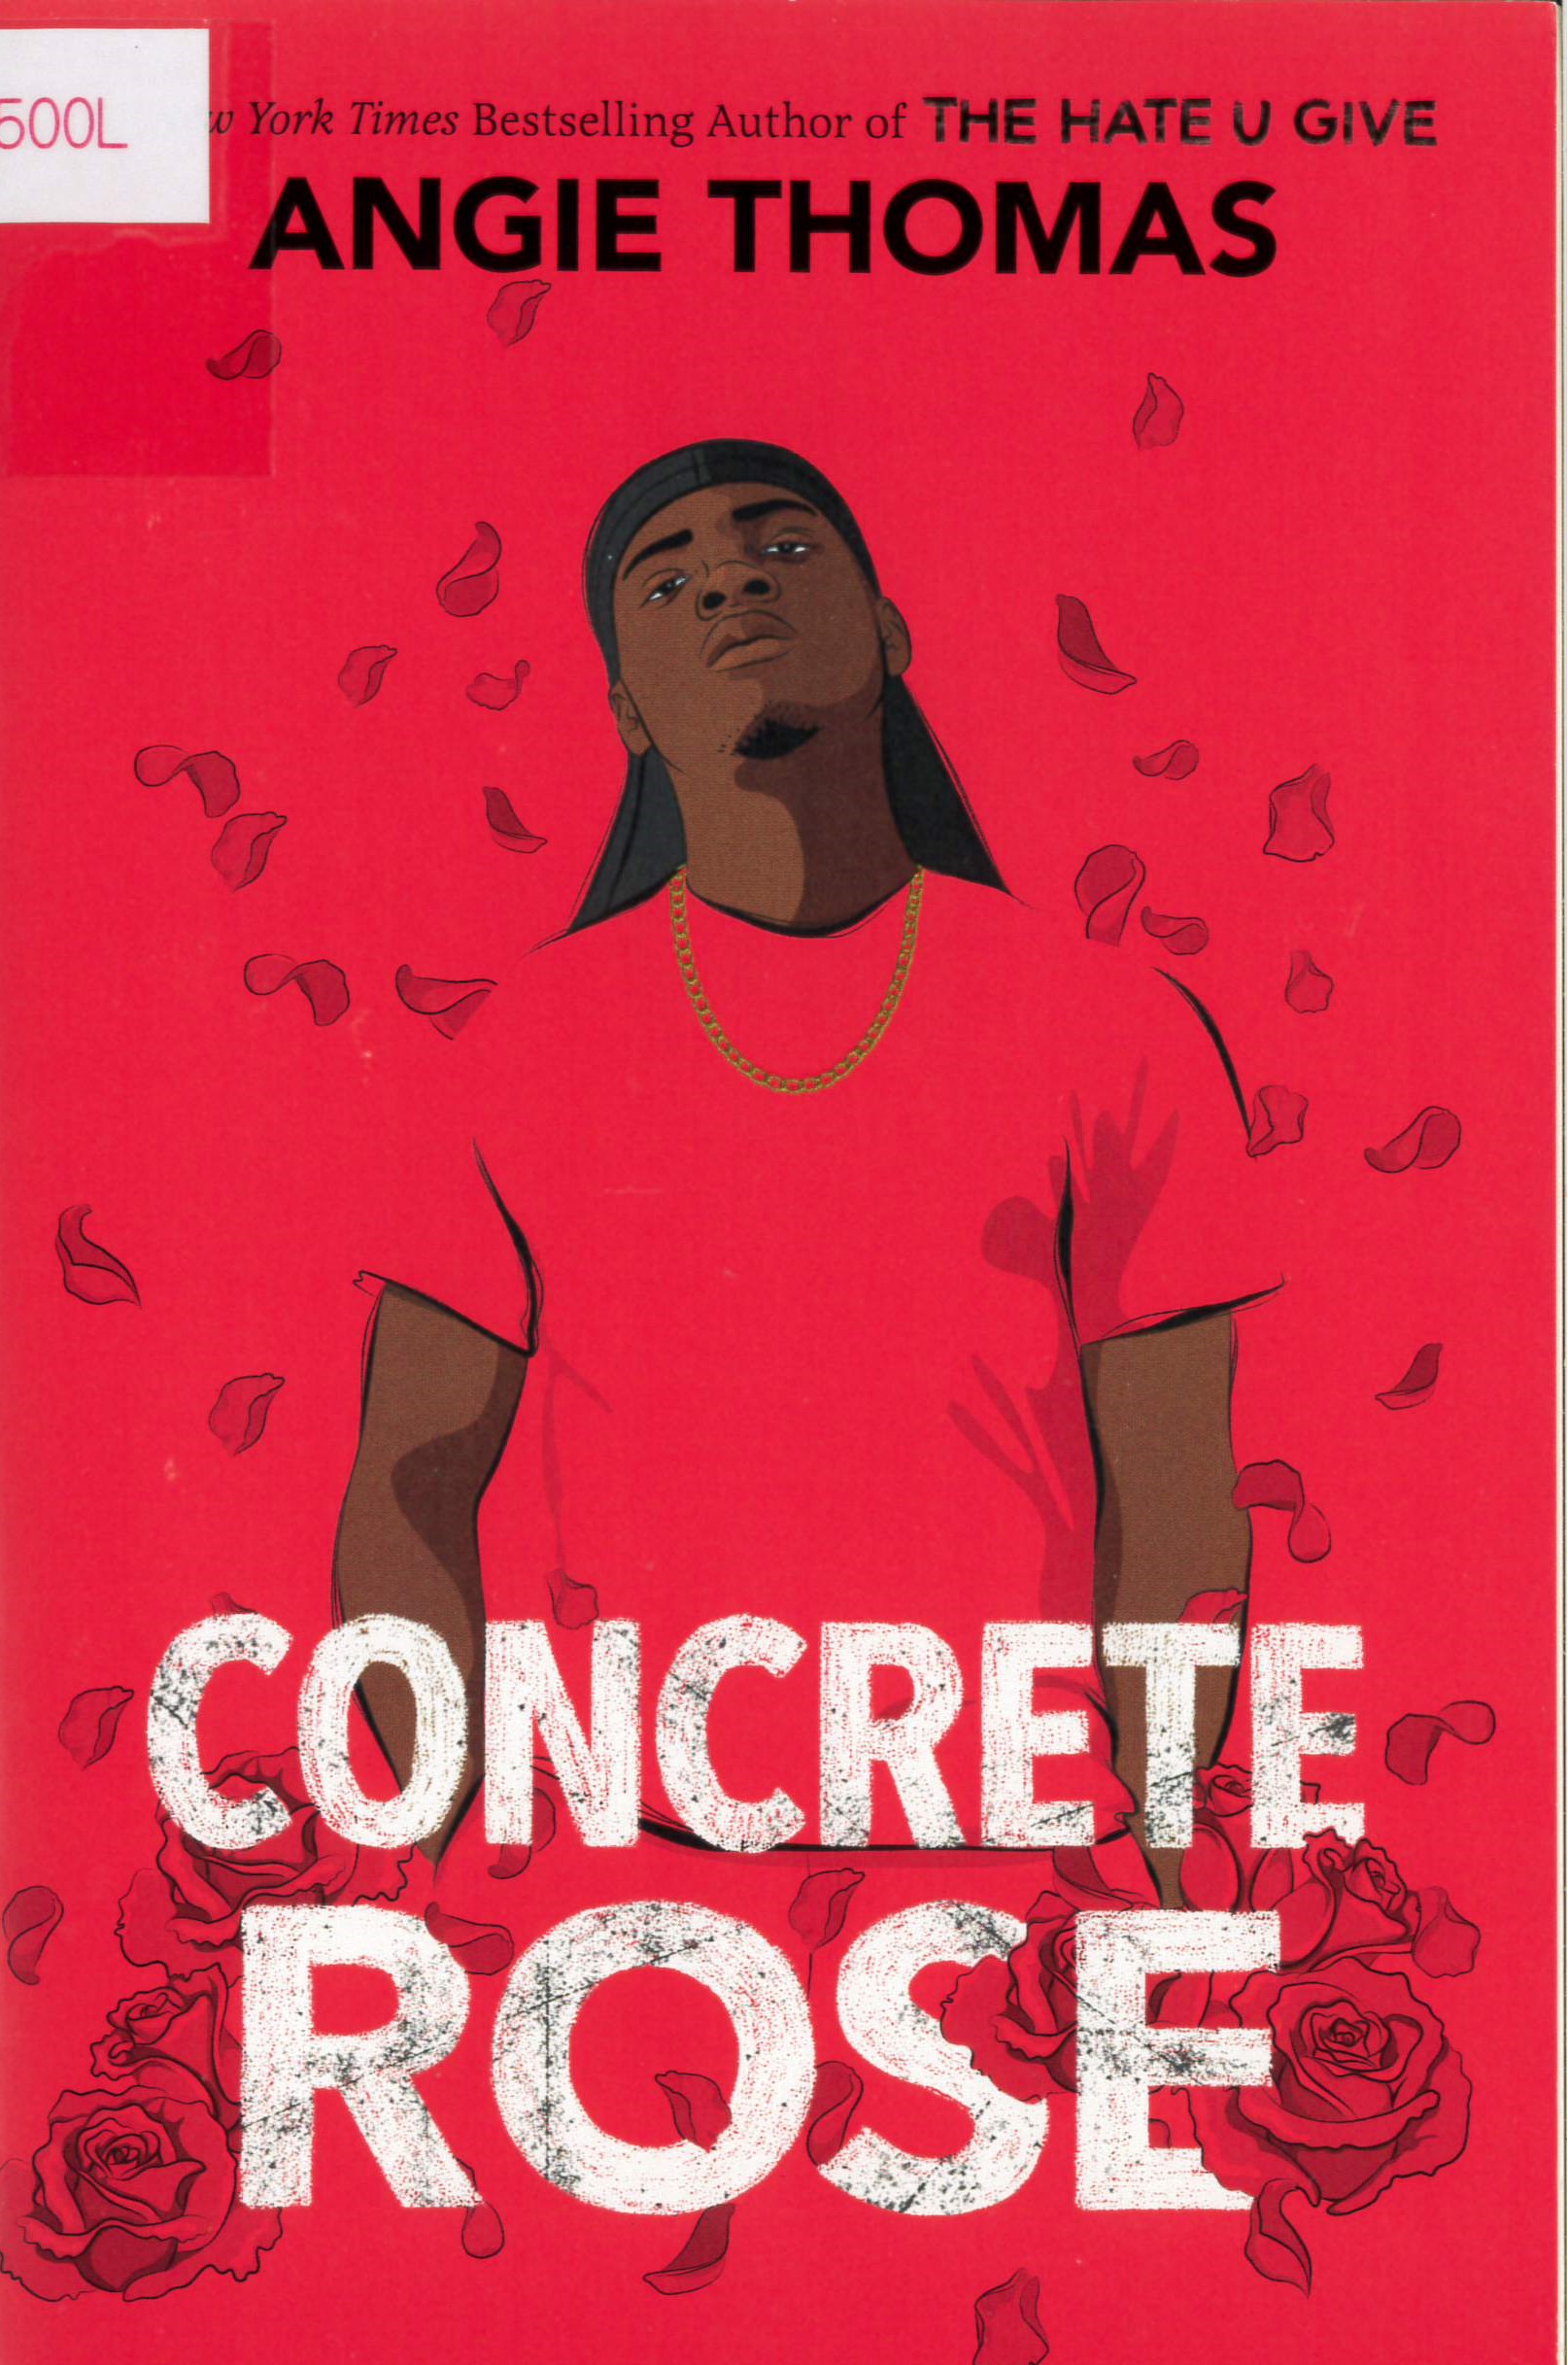 Concrete rose /